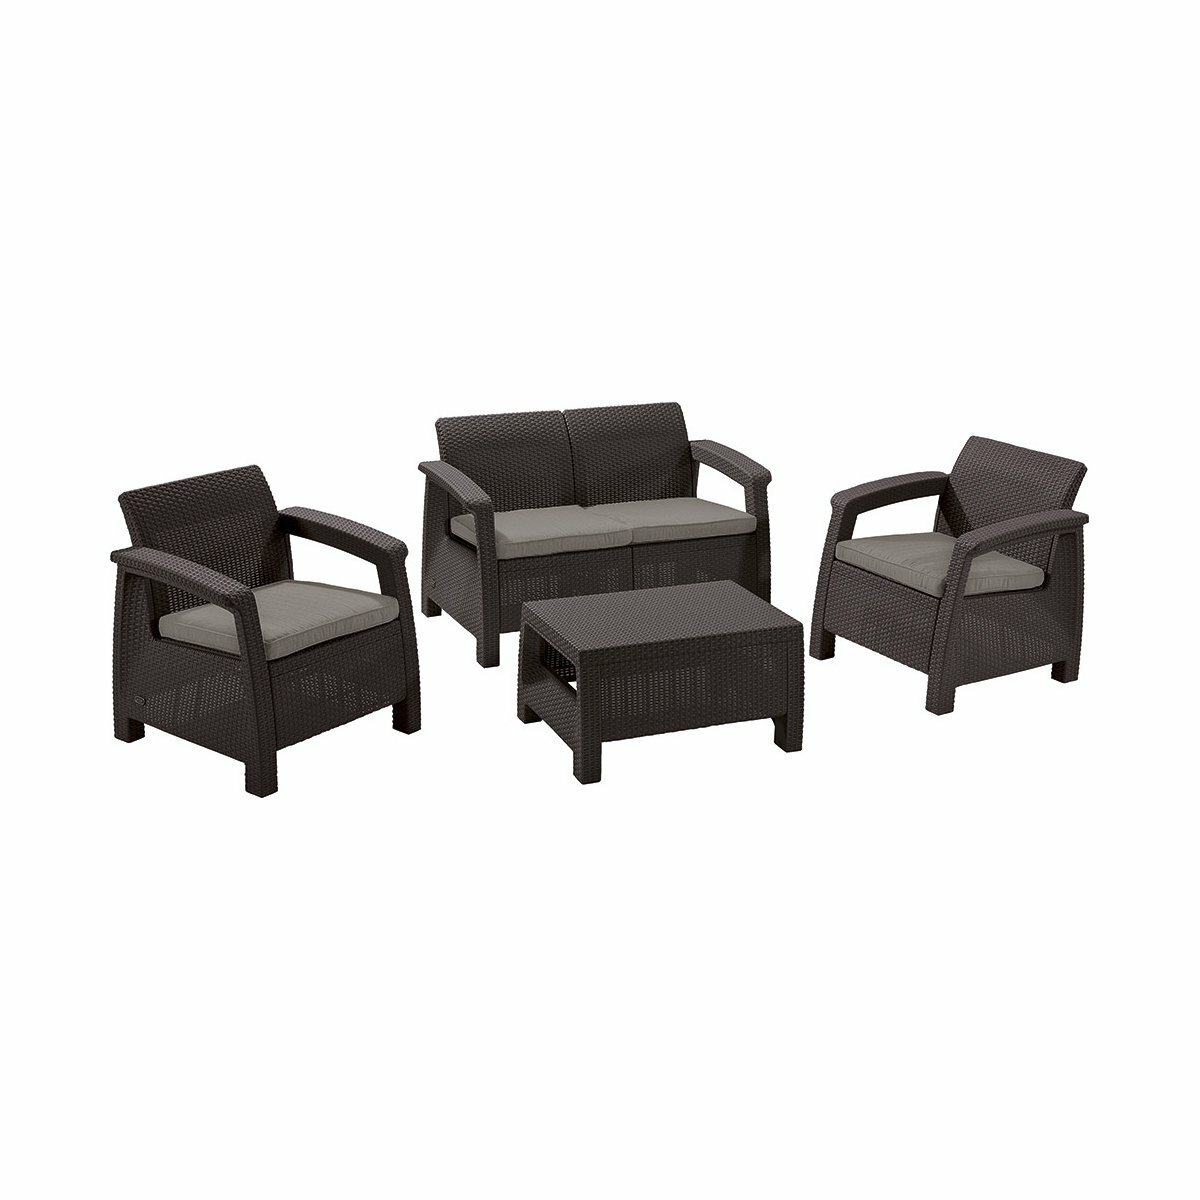 Комплект садовой мебели Keter Corfu Set (стол, 2 кресла, диван), коричневый